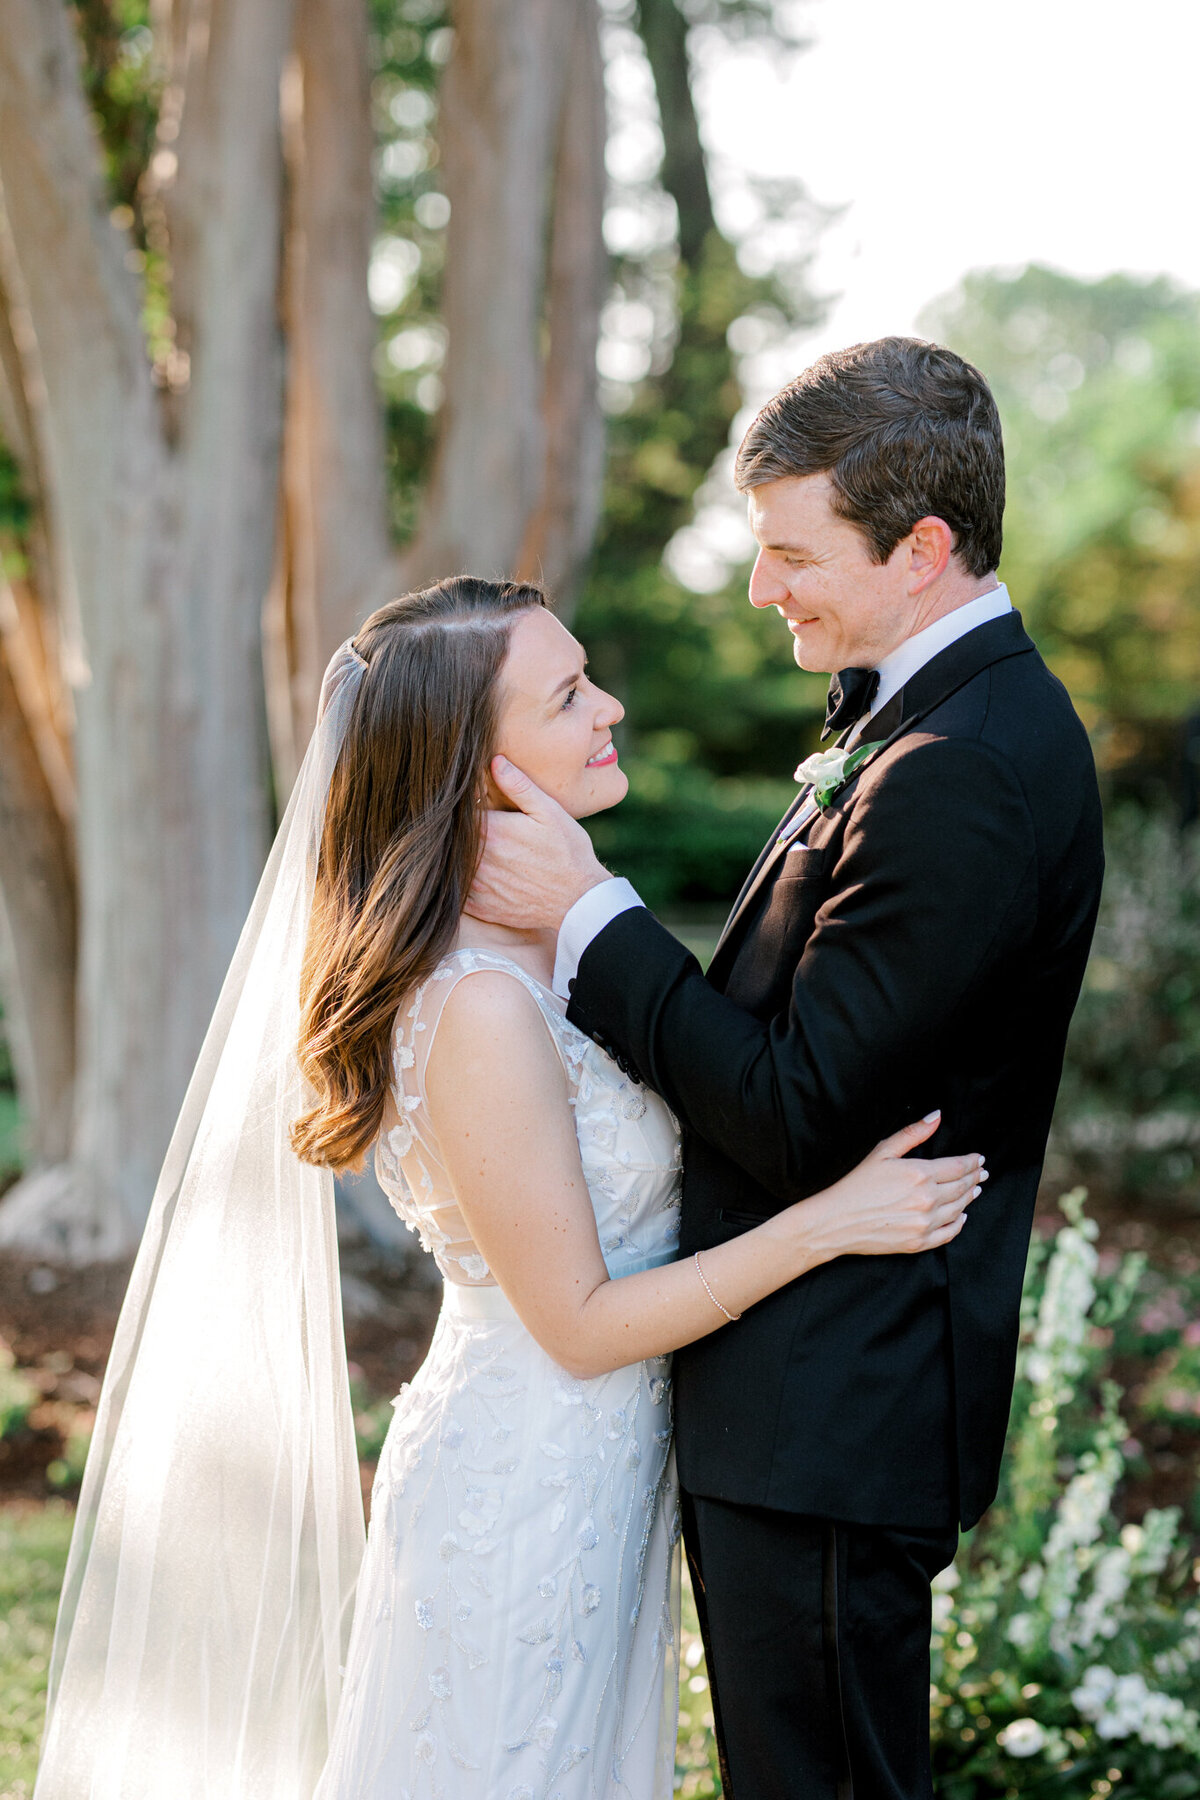 Gena & Matt's Wedding at the Dallas Arboretum | Dallas Wedding Photographer | Sami Kathryn Photography-6